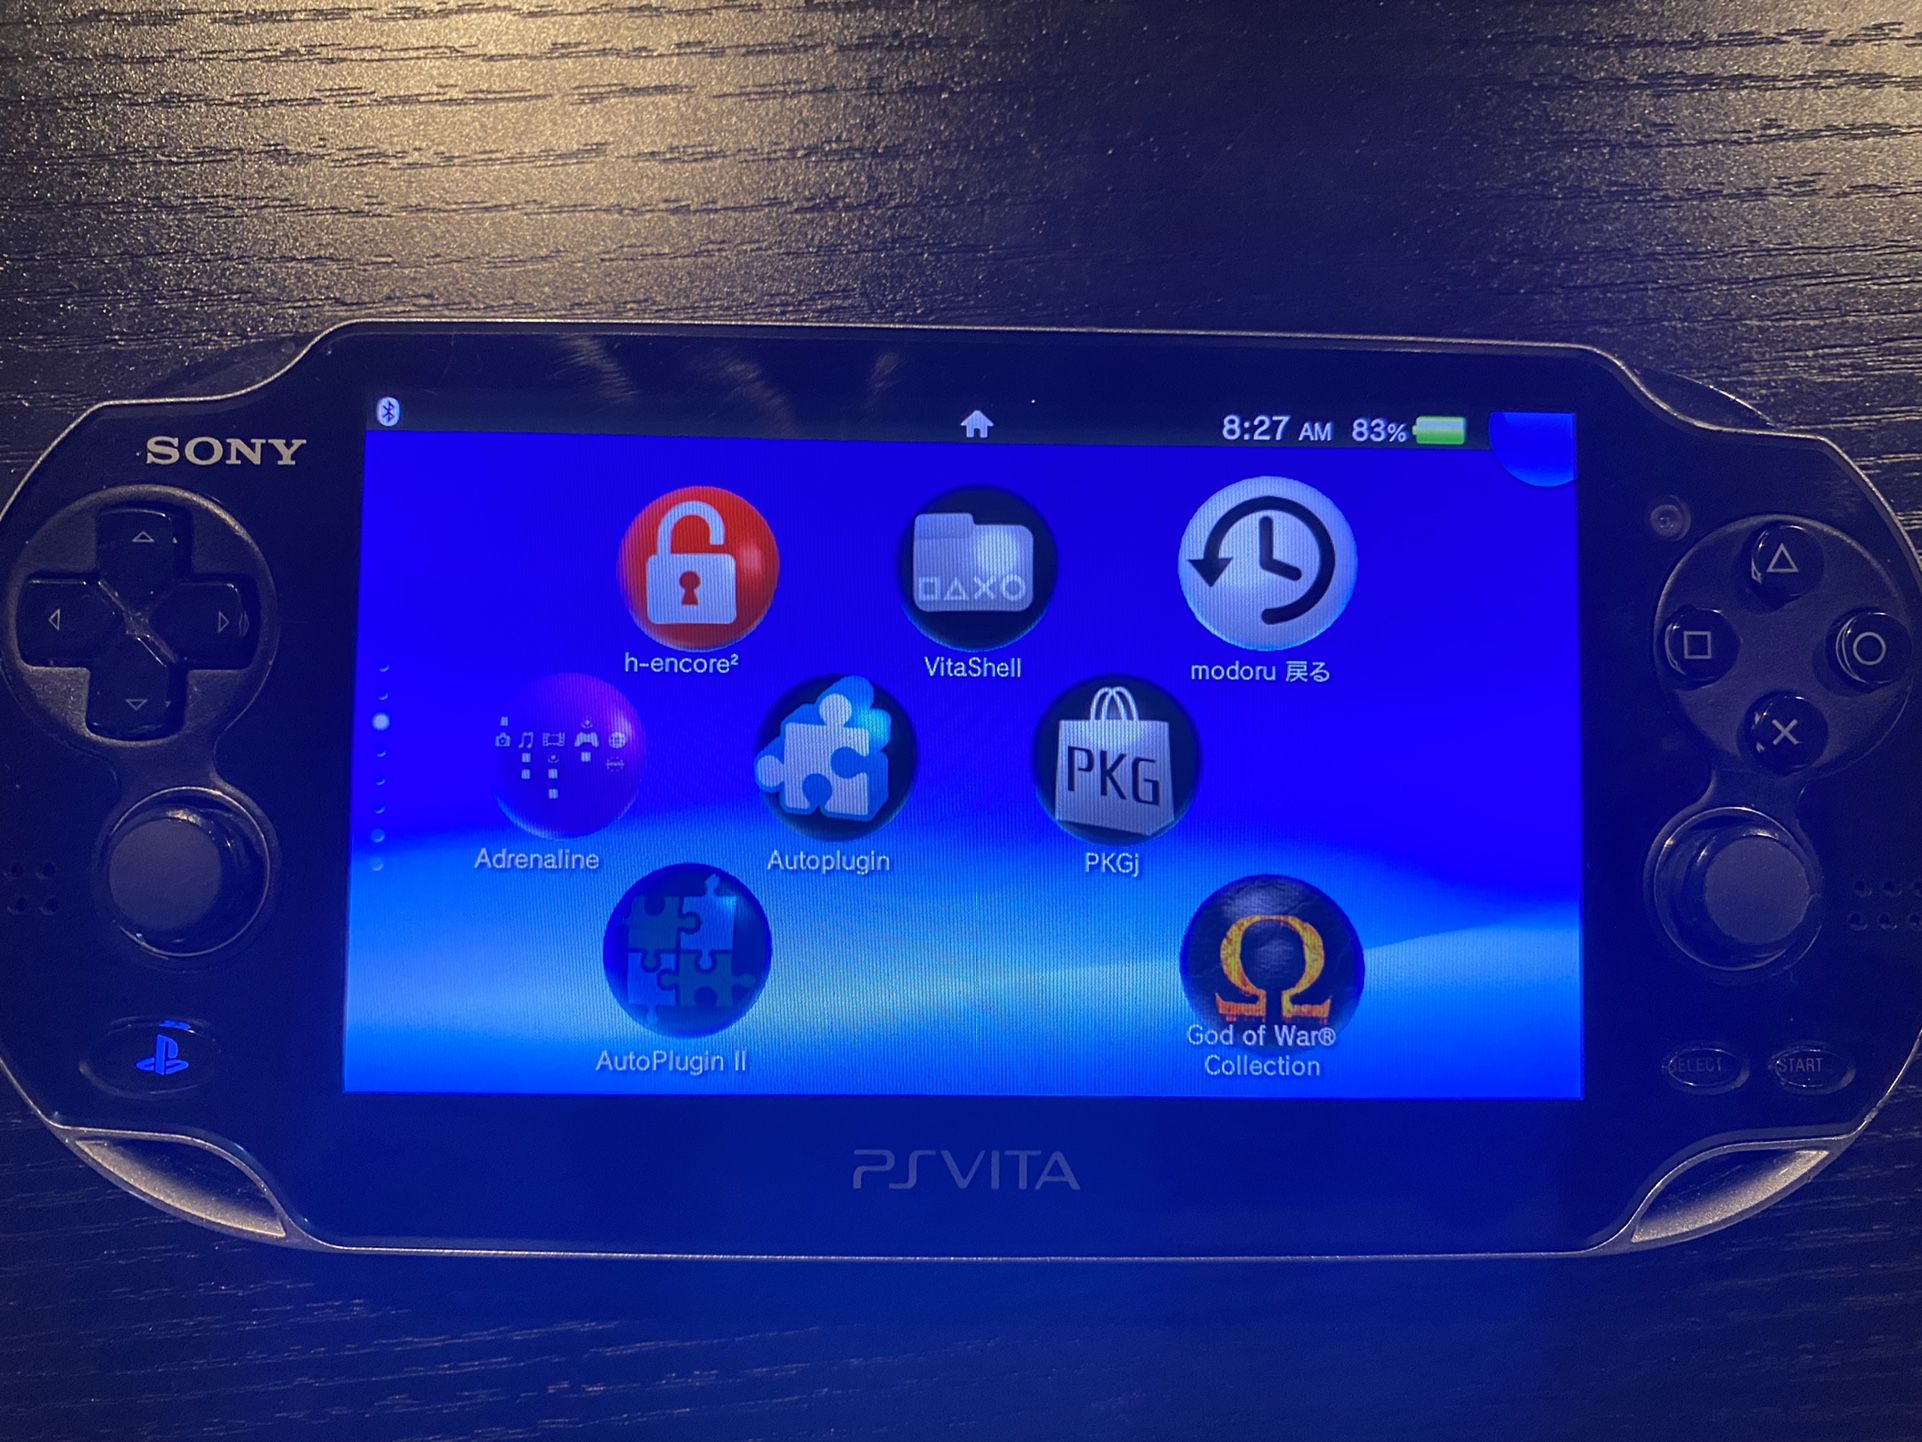 PS Vita 1000 OLED, Fully Modded, SD card Full Of Games 